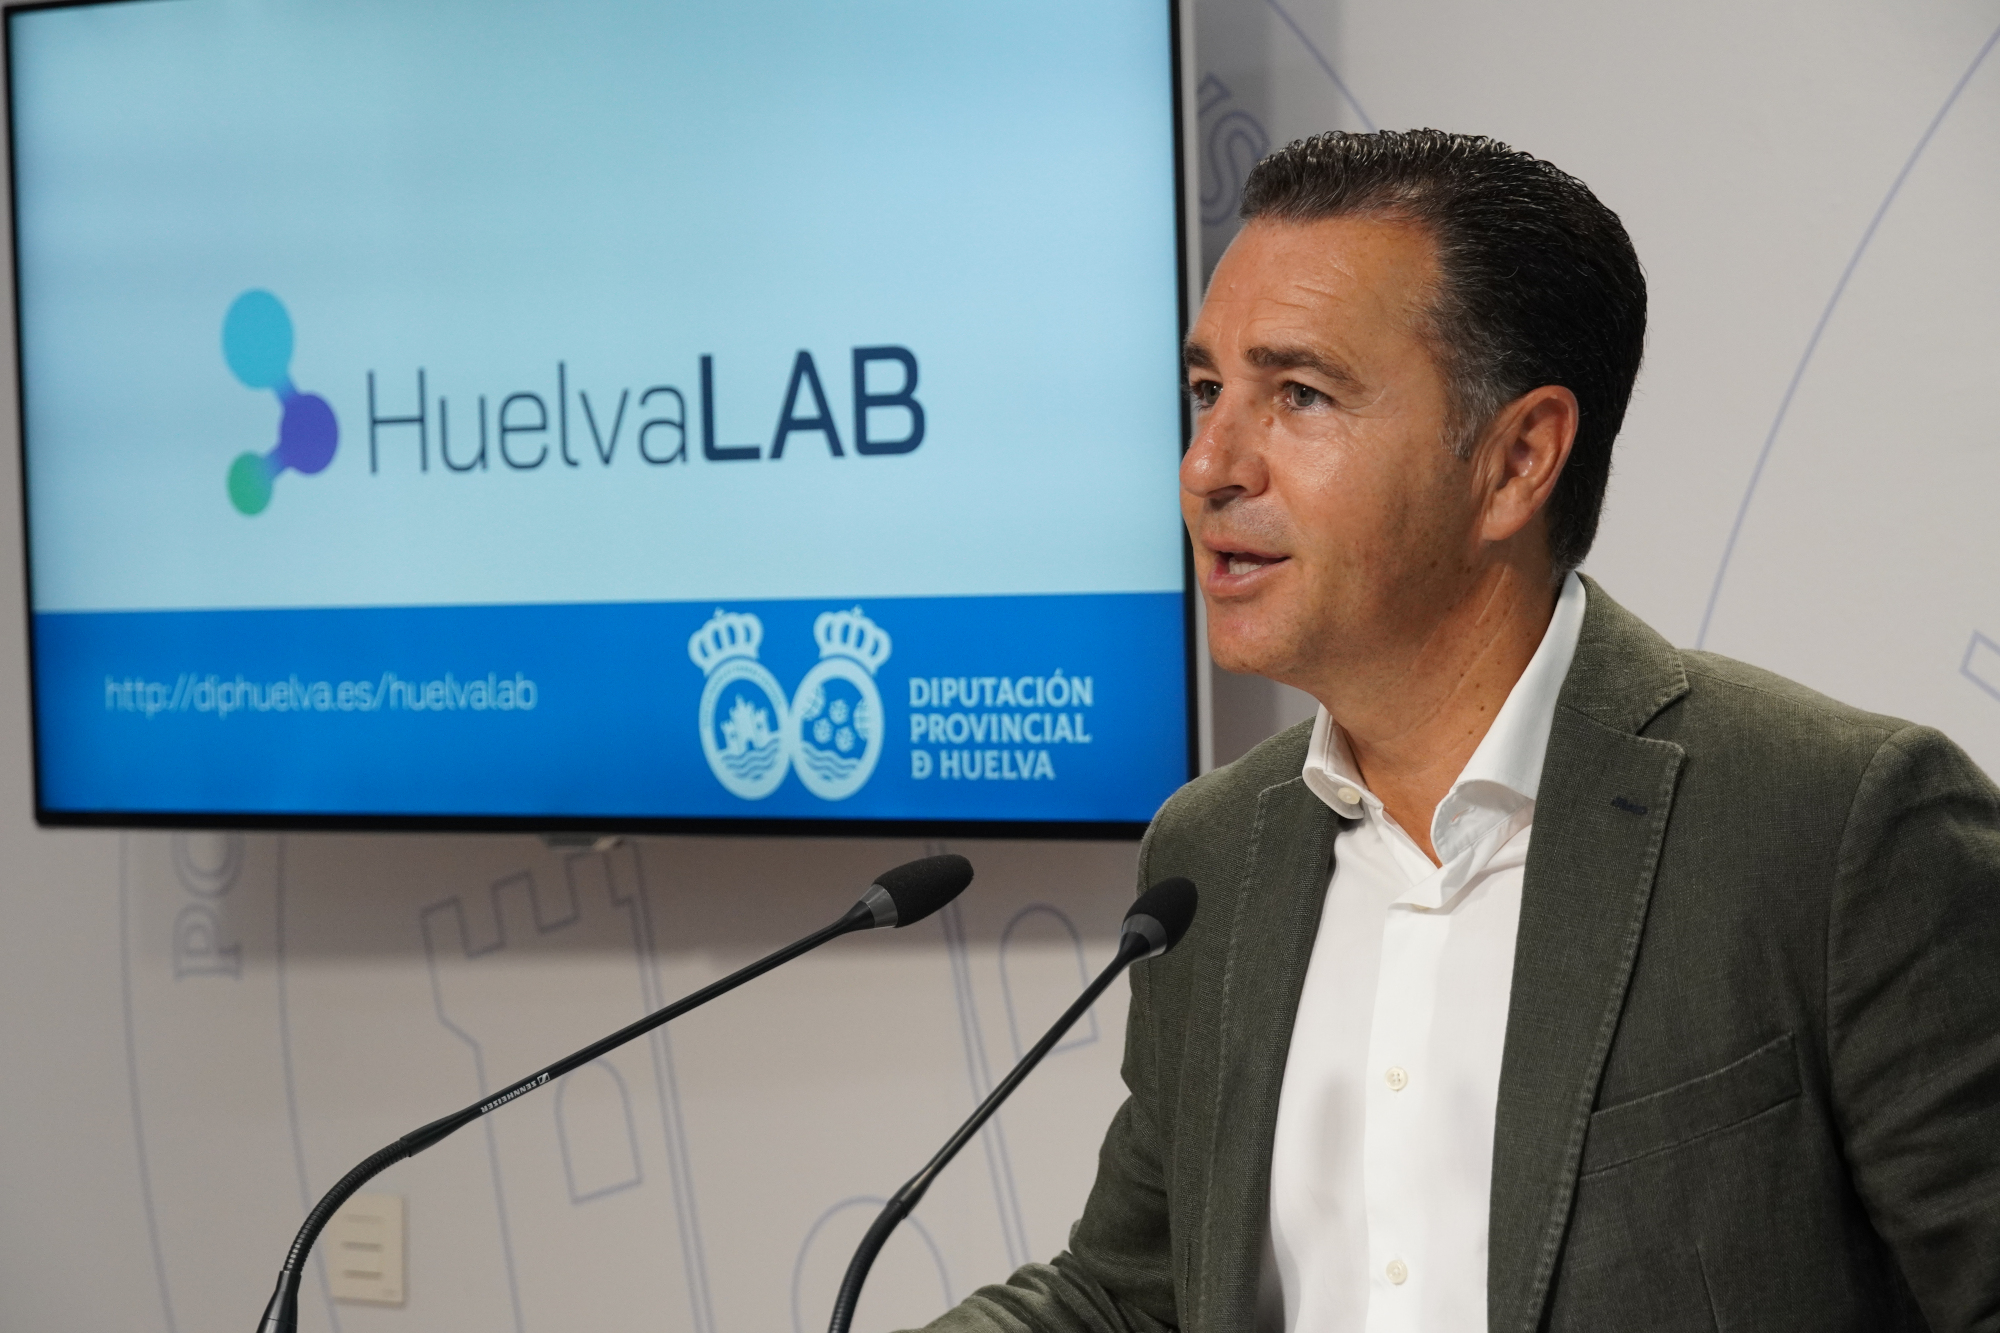 Diputación presenta HuelvaLAB, un proyecto tecnológico innovador